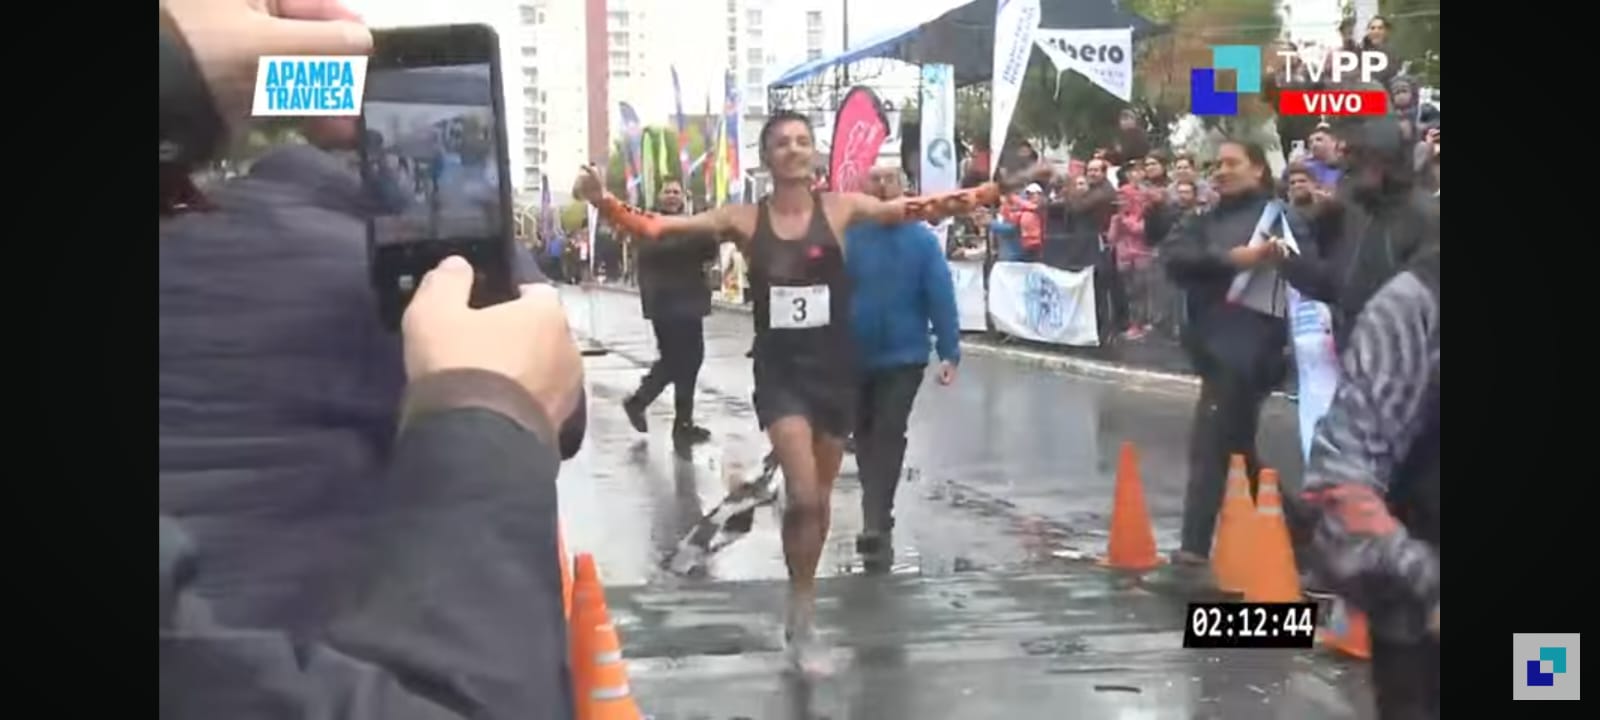 Maratón A Pampa Traviesa: Ignacio Erario es campeón argentino